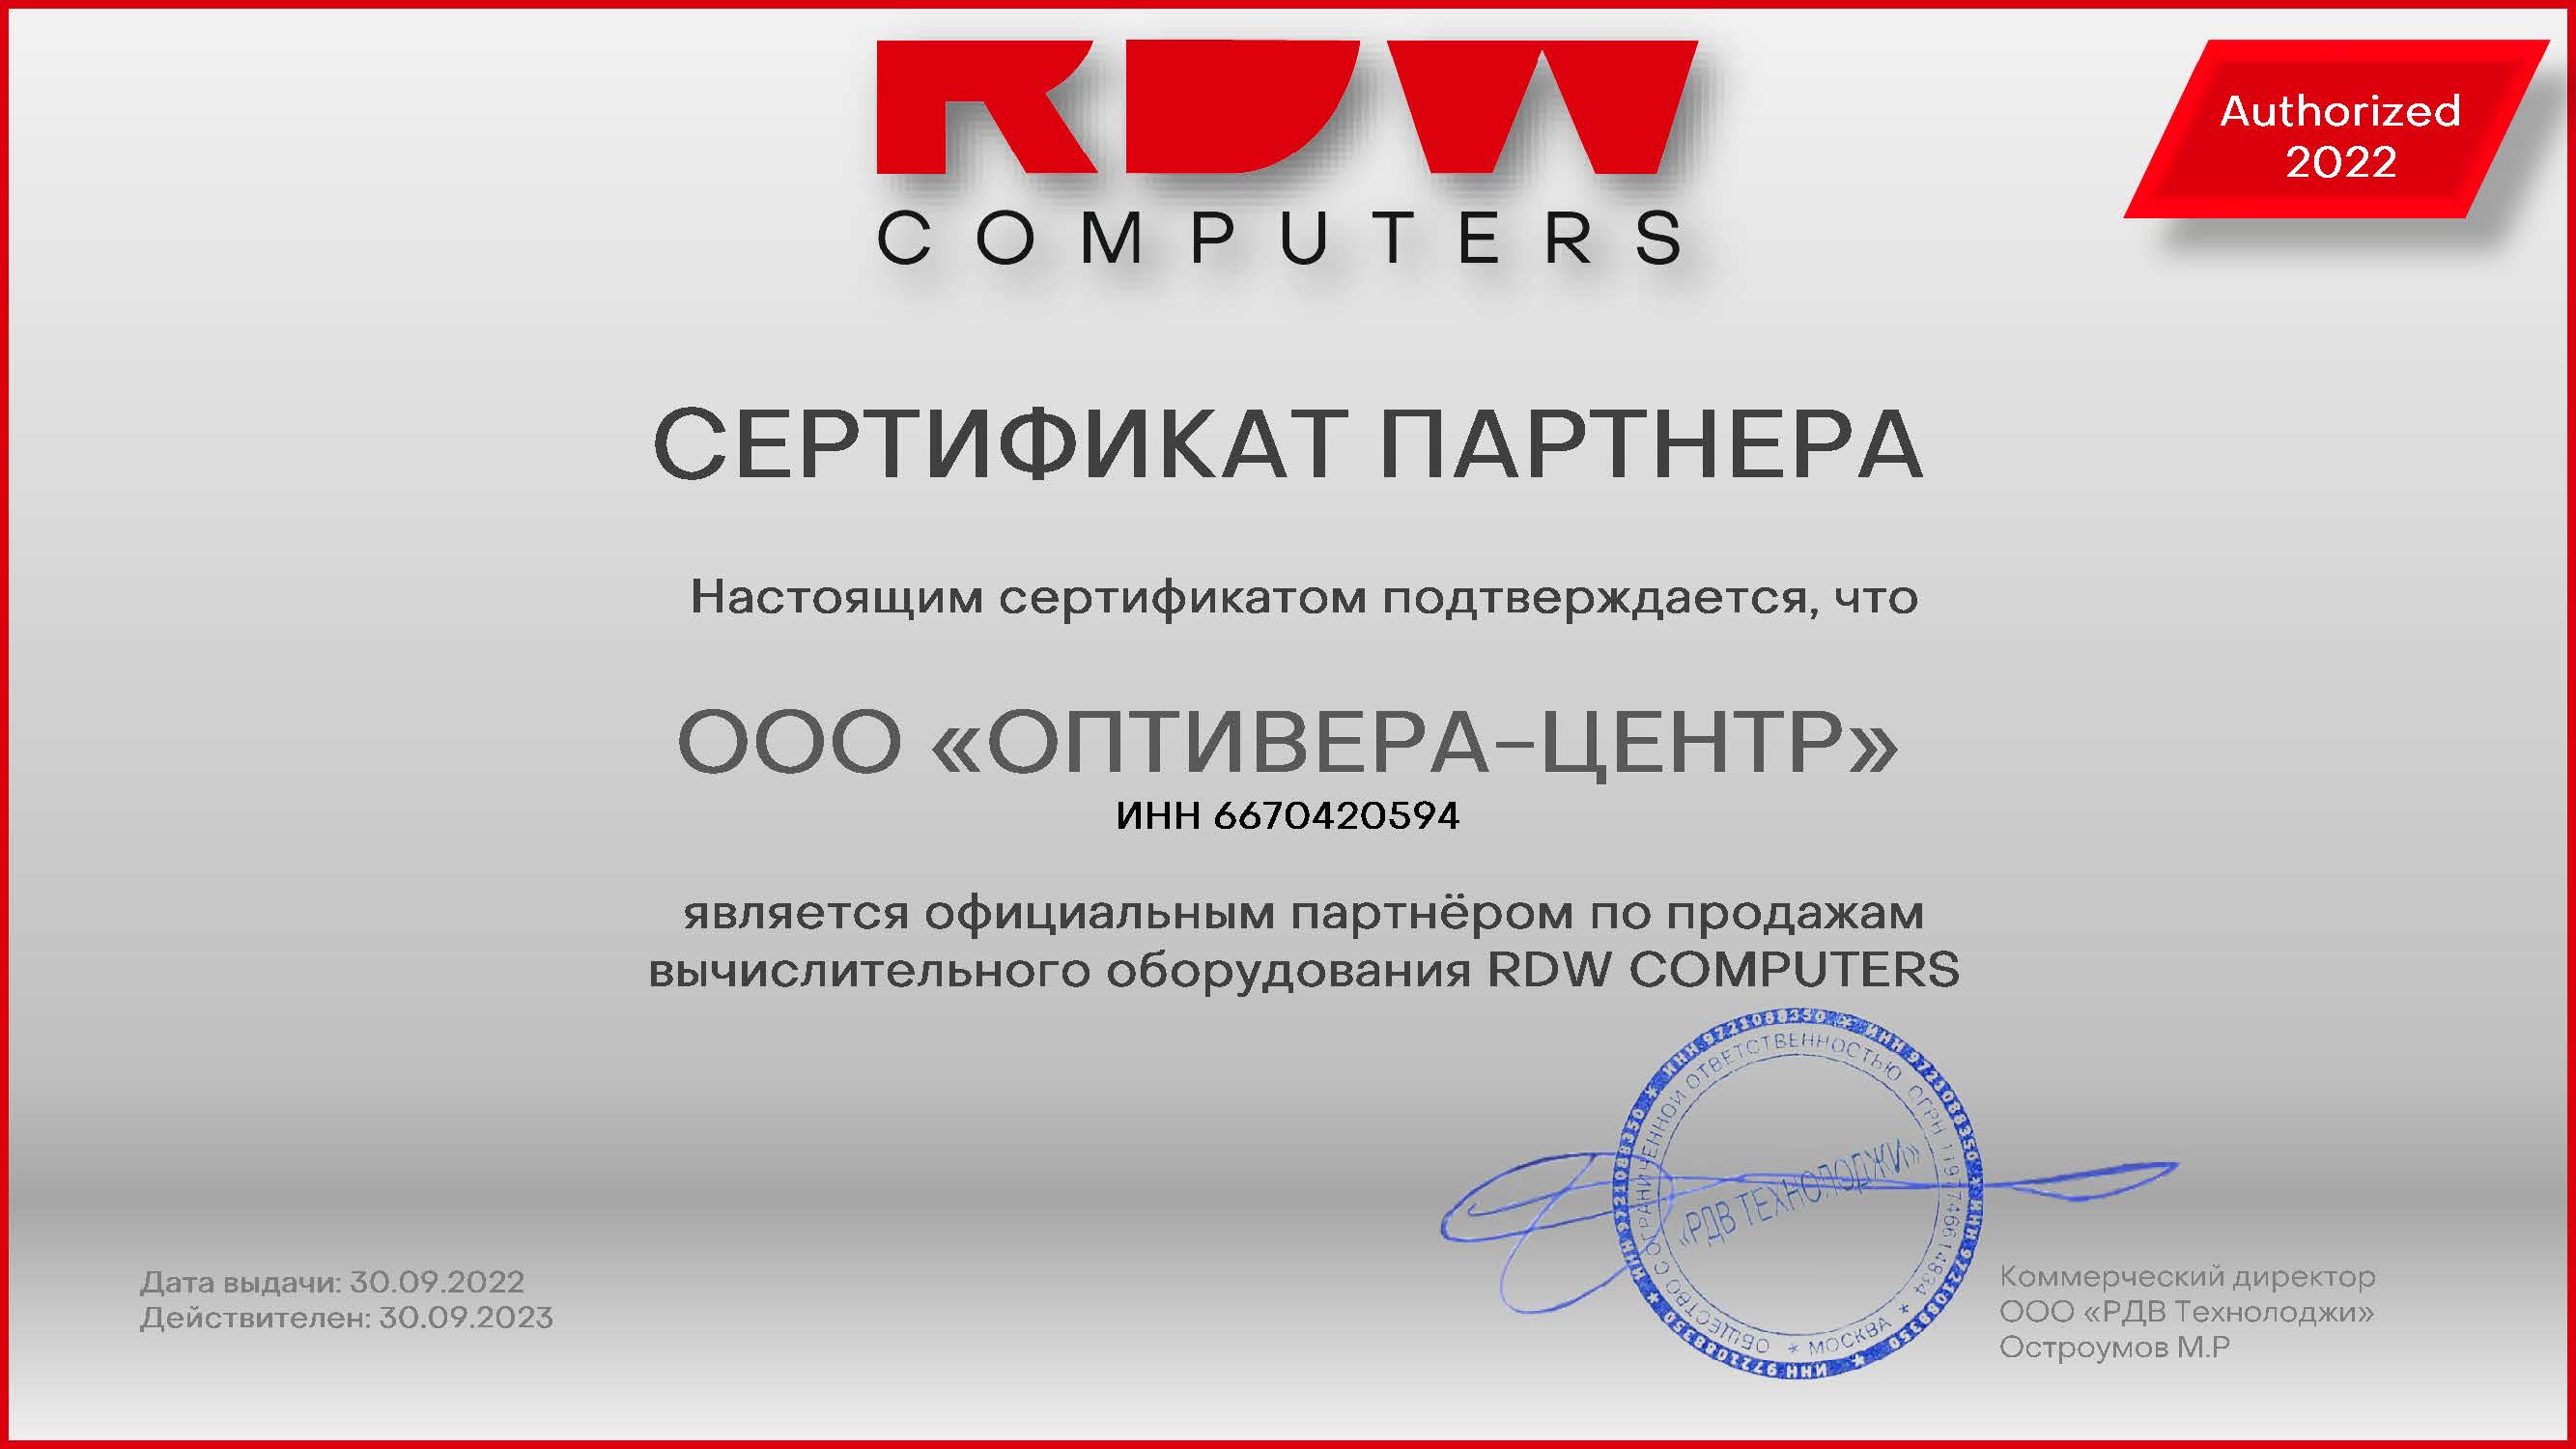 Оптивера официальный партнер RDW Technology